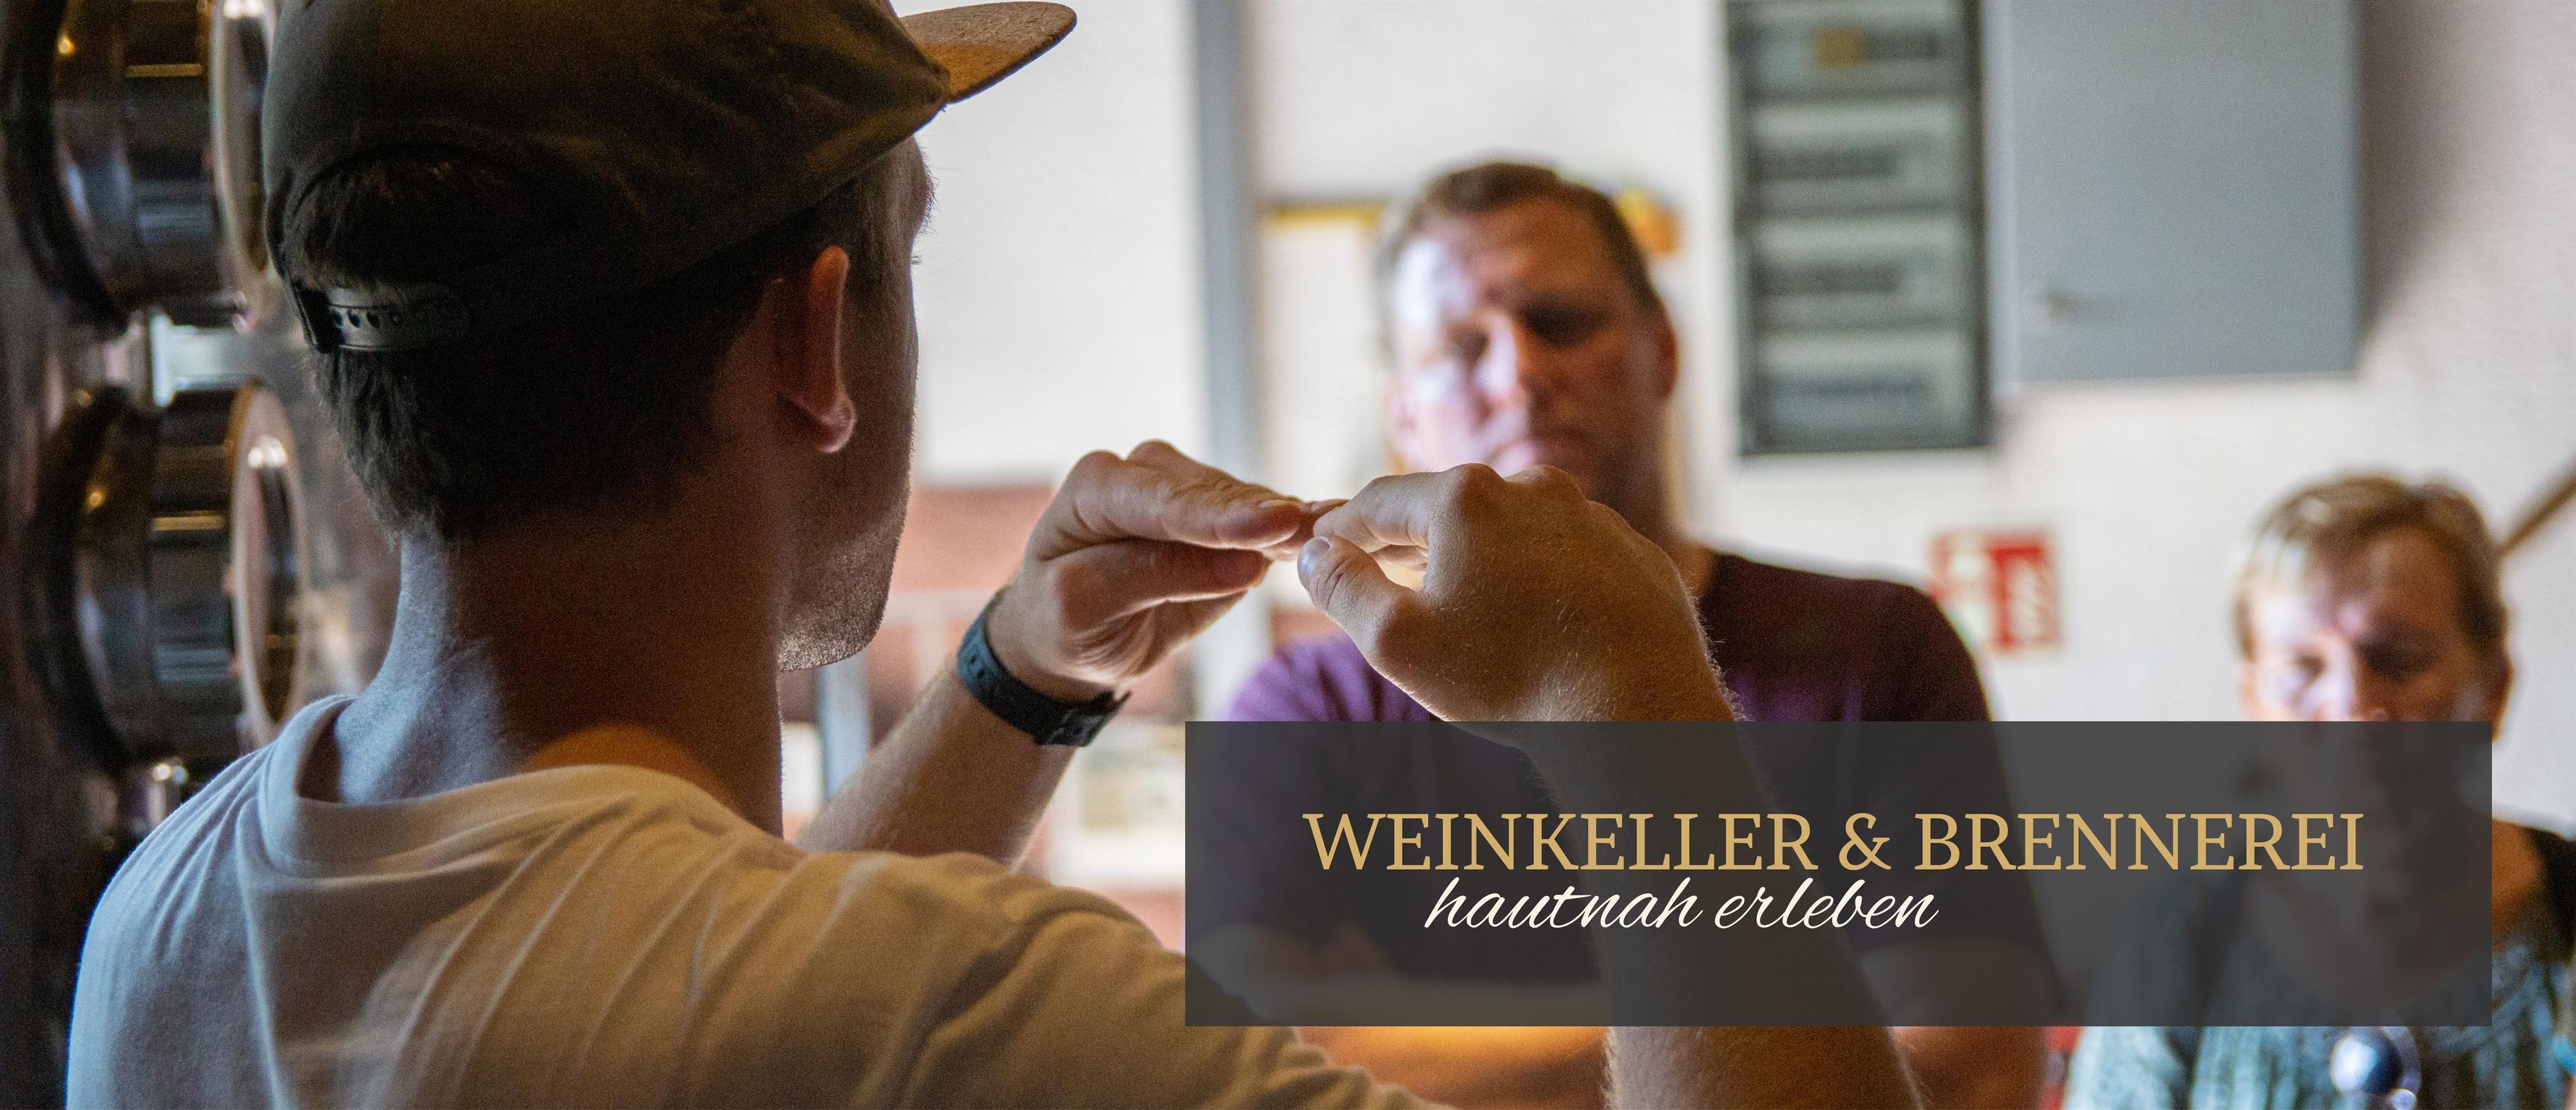 Weinkeller & Brennerei